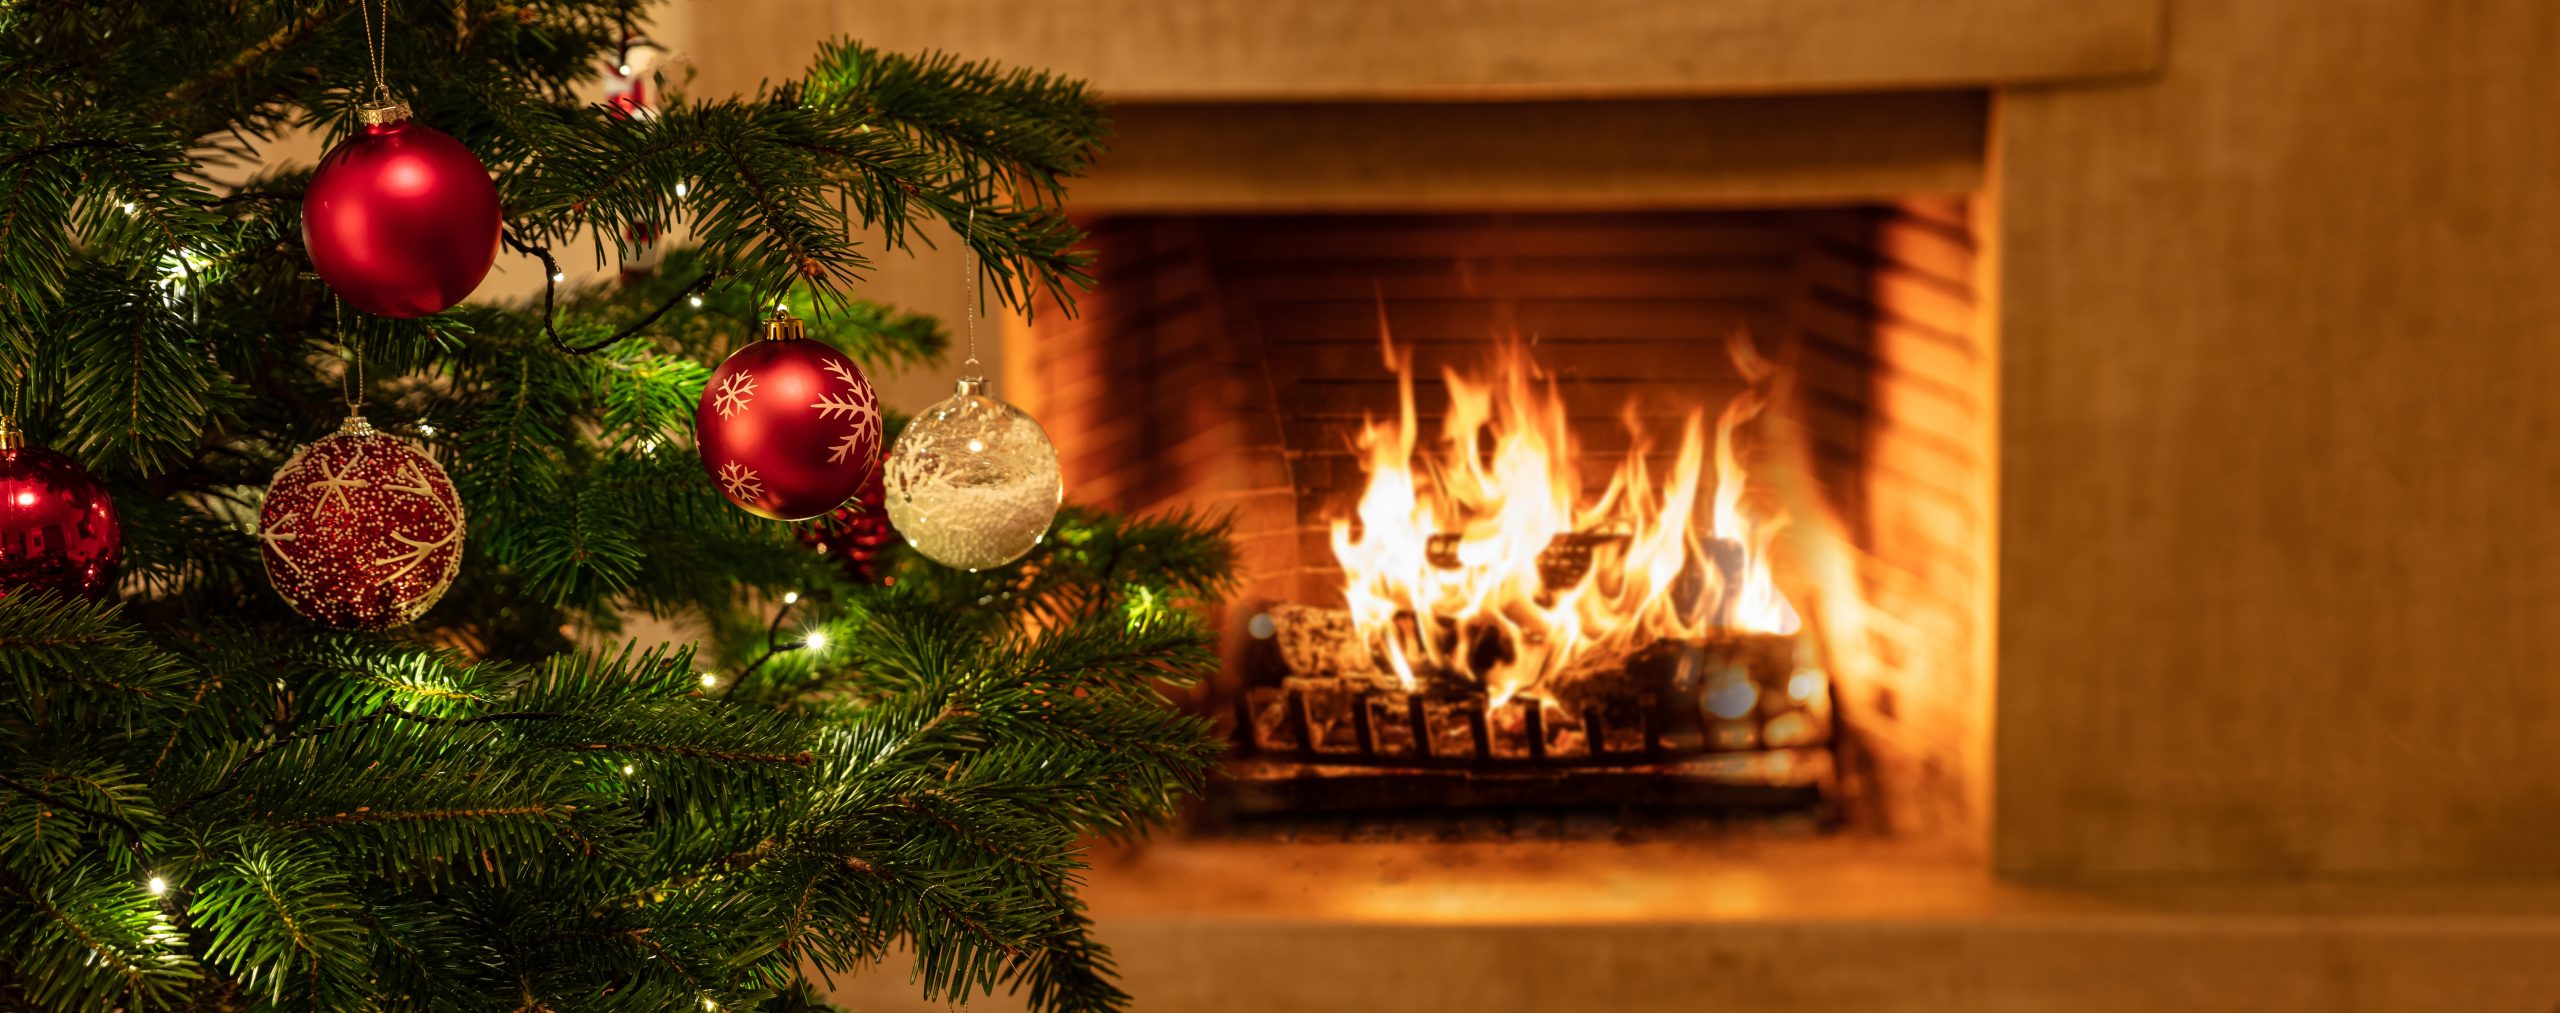 Christmas tree close up on burning fireplace background